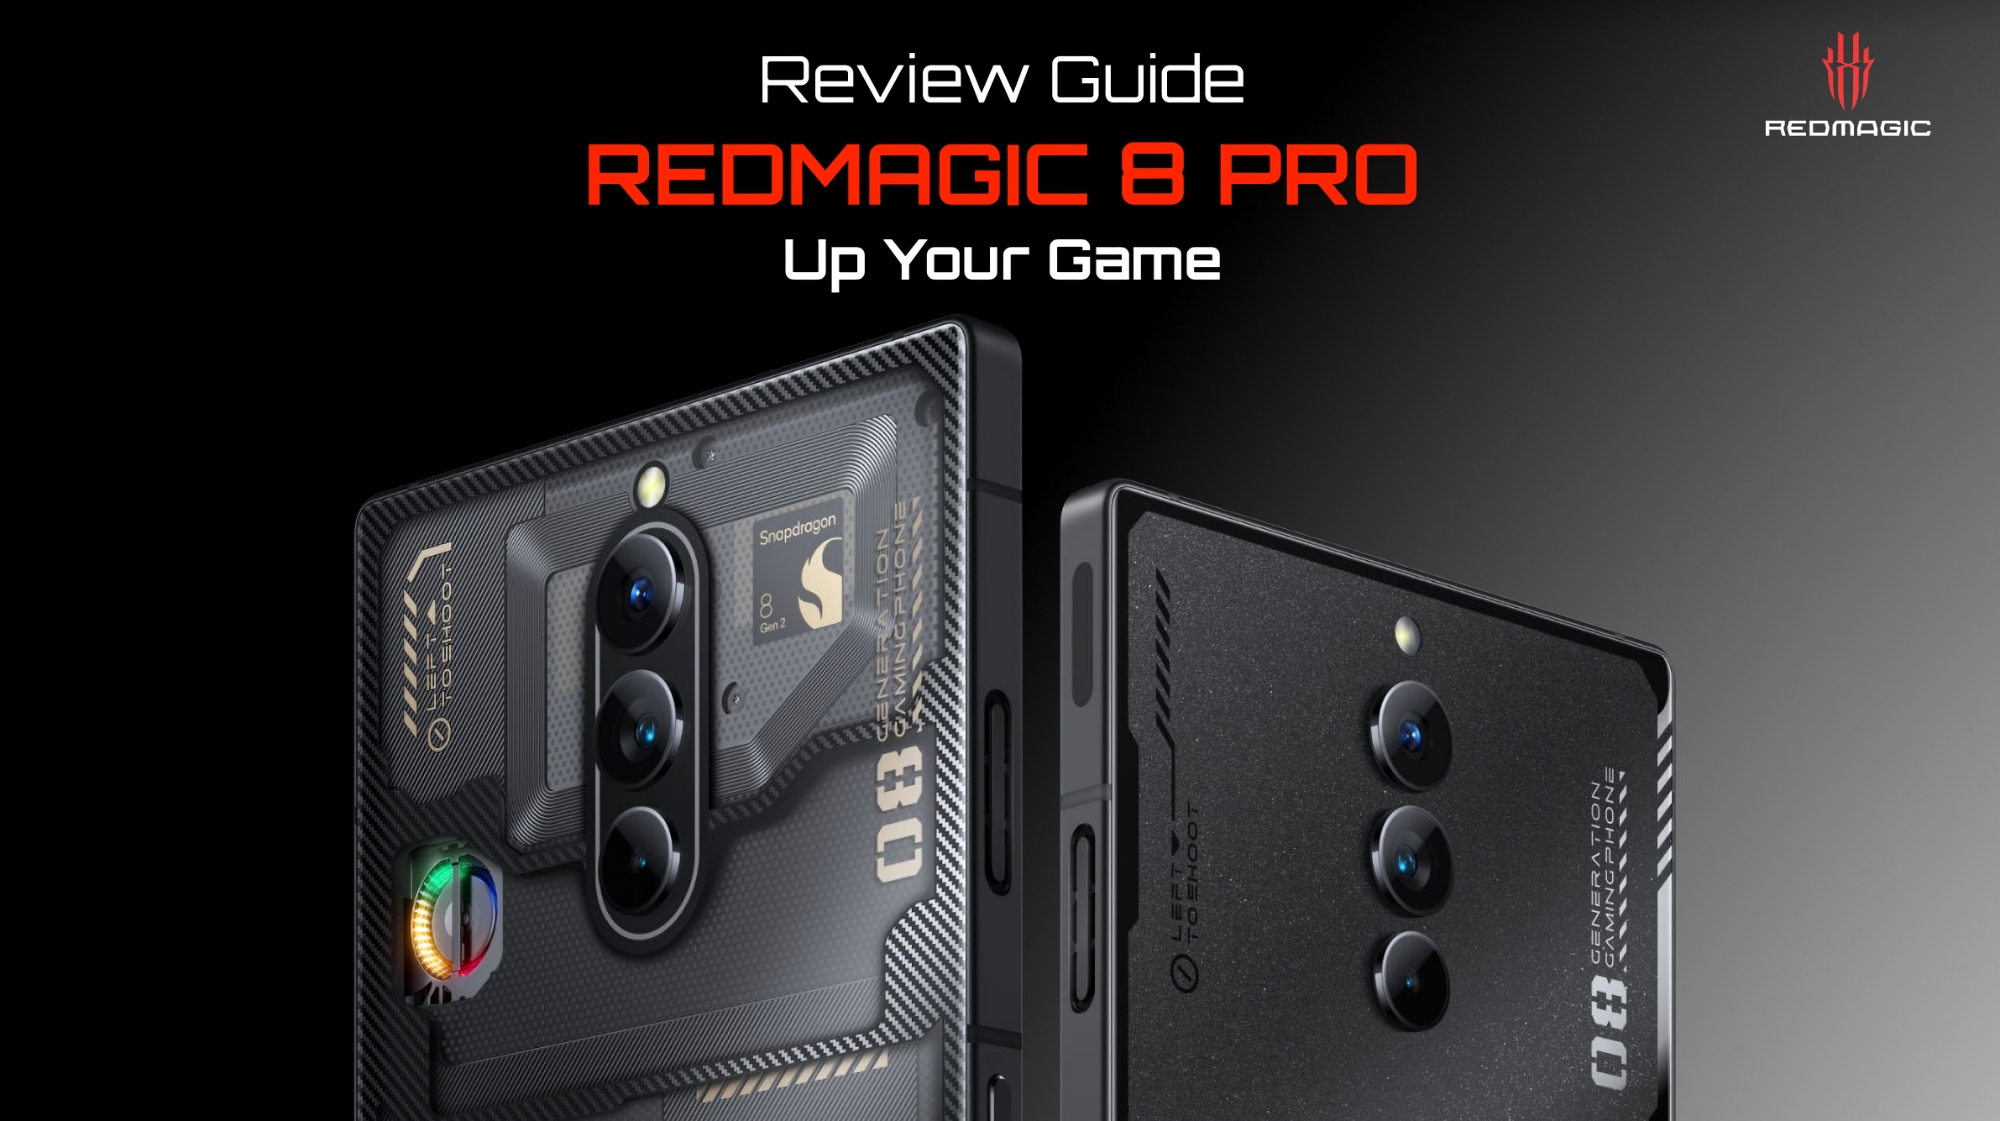 nubia bringt das Red Magic 8 Pro Gaming-Smartphone auf den Weltmarkt: Kamera unter dem Bildschirm, Snapdragon 8 Gen 2 Chip und 6000 mAh Akku